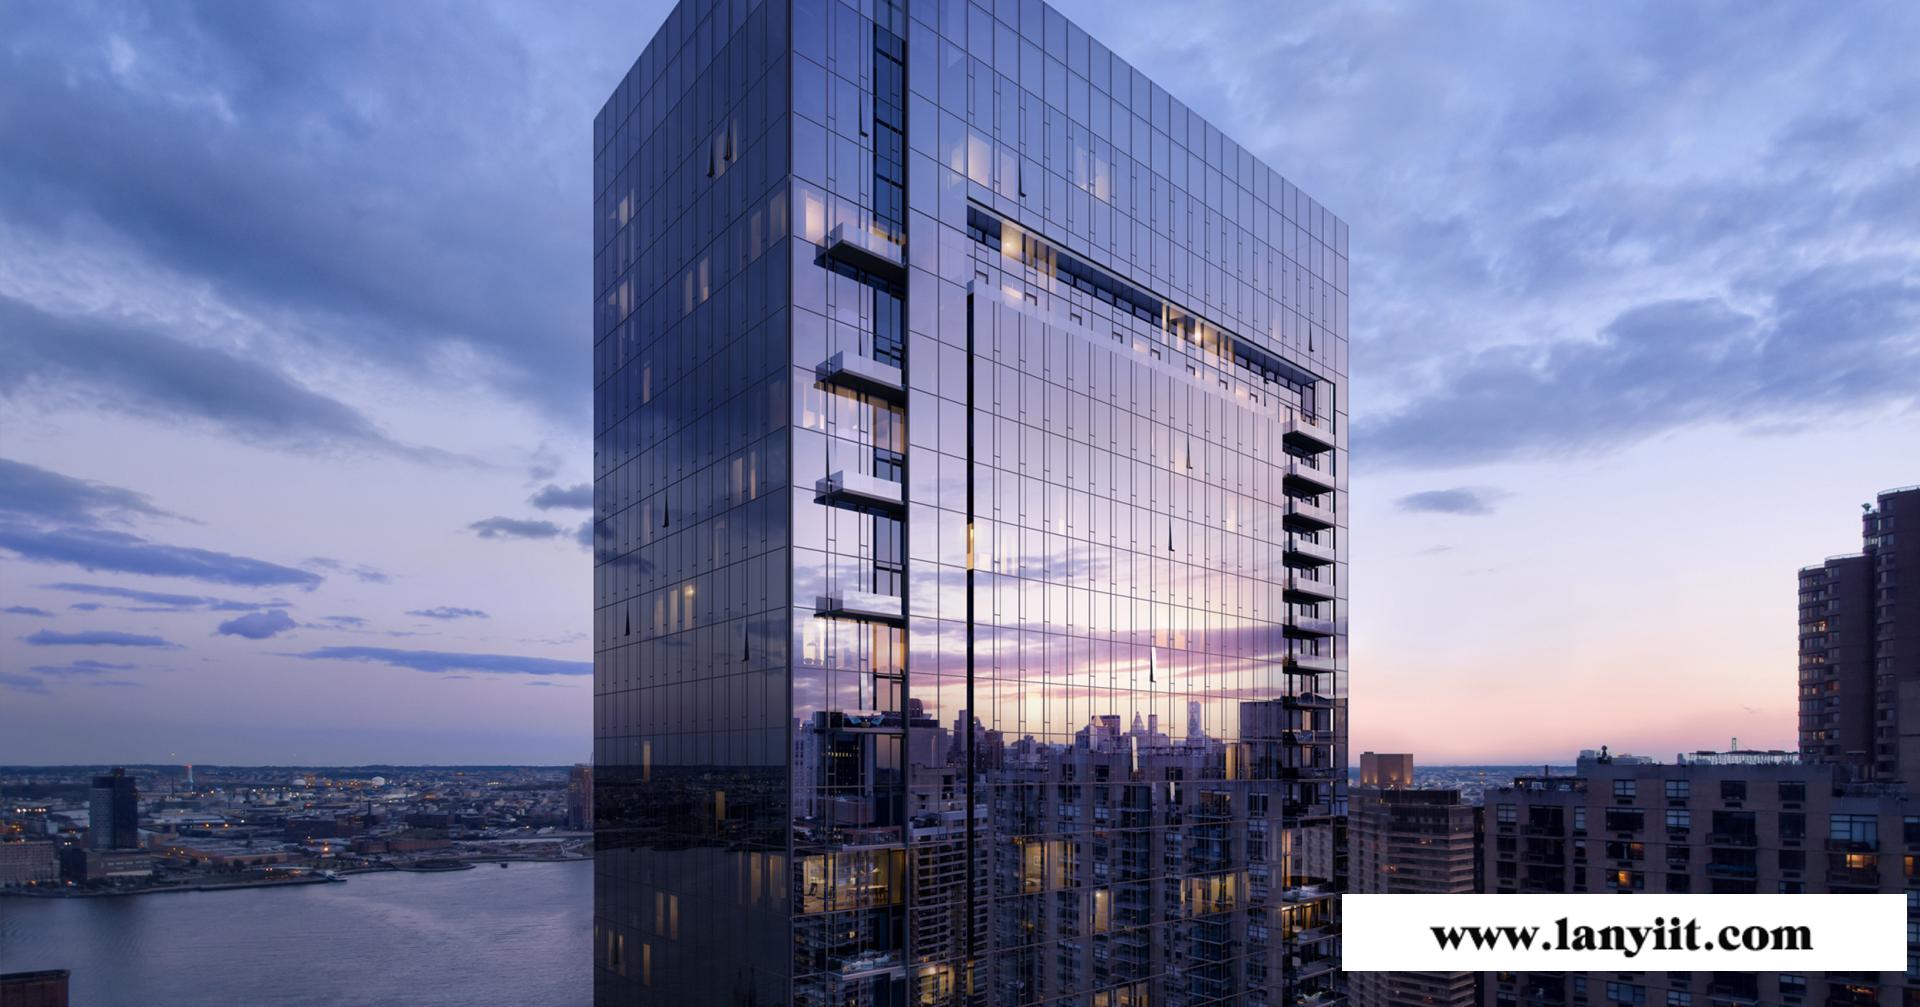 曼哈顿东高端楼盘推荐:联合国一号 全玻璃幕墙 坐享无敌河景和曼哈顿城市全景景观(图1)